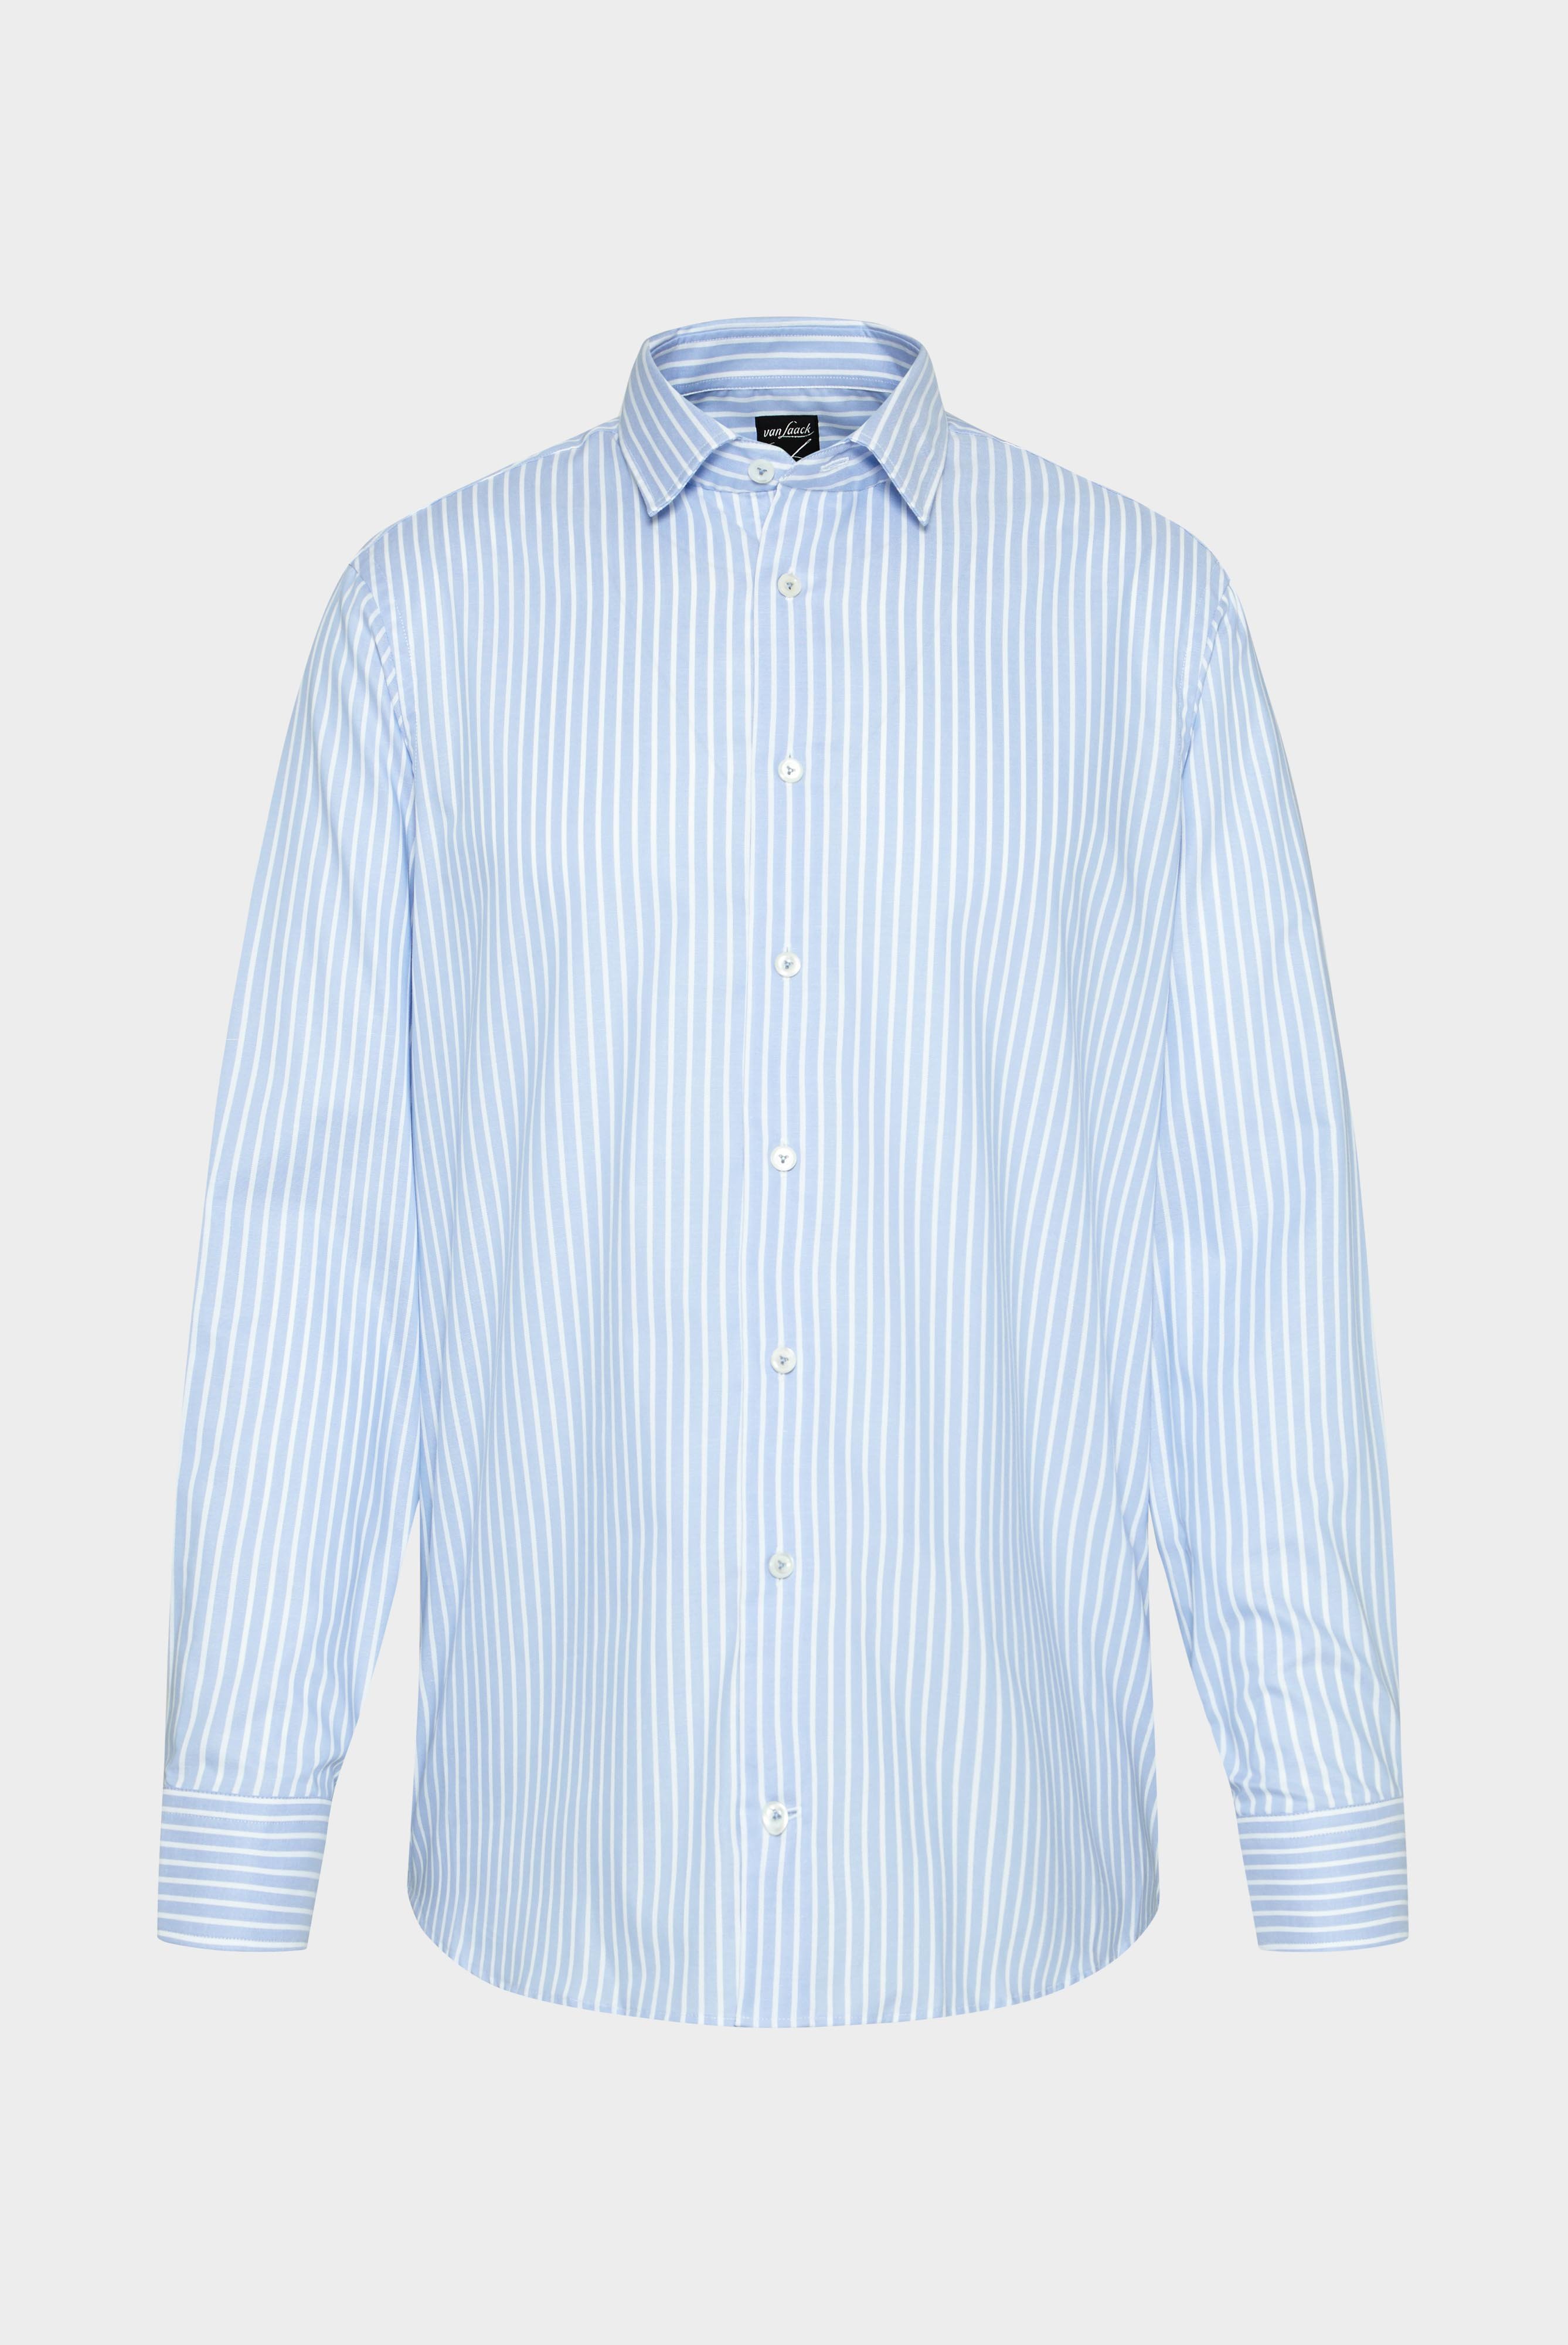 Bügelleichte Hemden+Bügelfreies Hemd aus Bio-Baumwolle Tailor Fit+20.3281.NV.166009.730.37